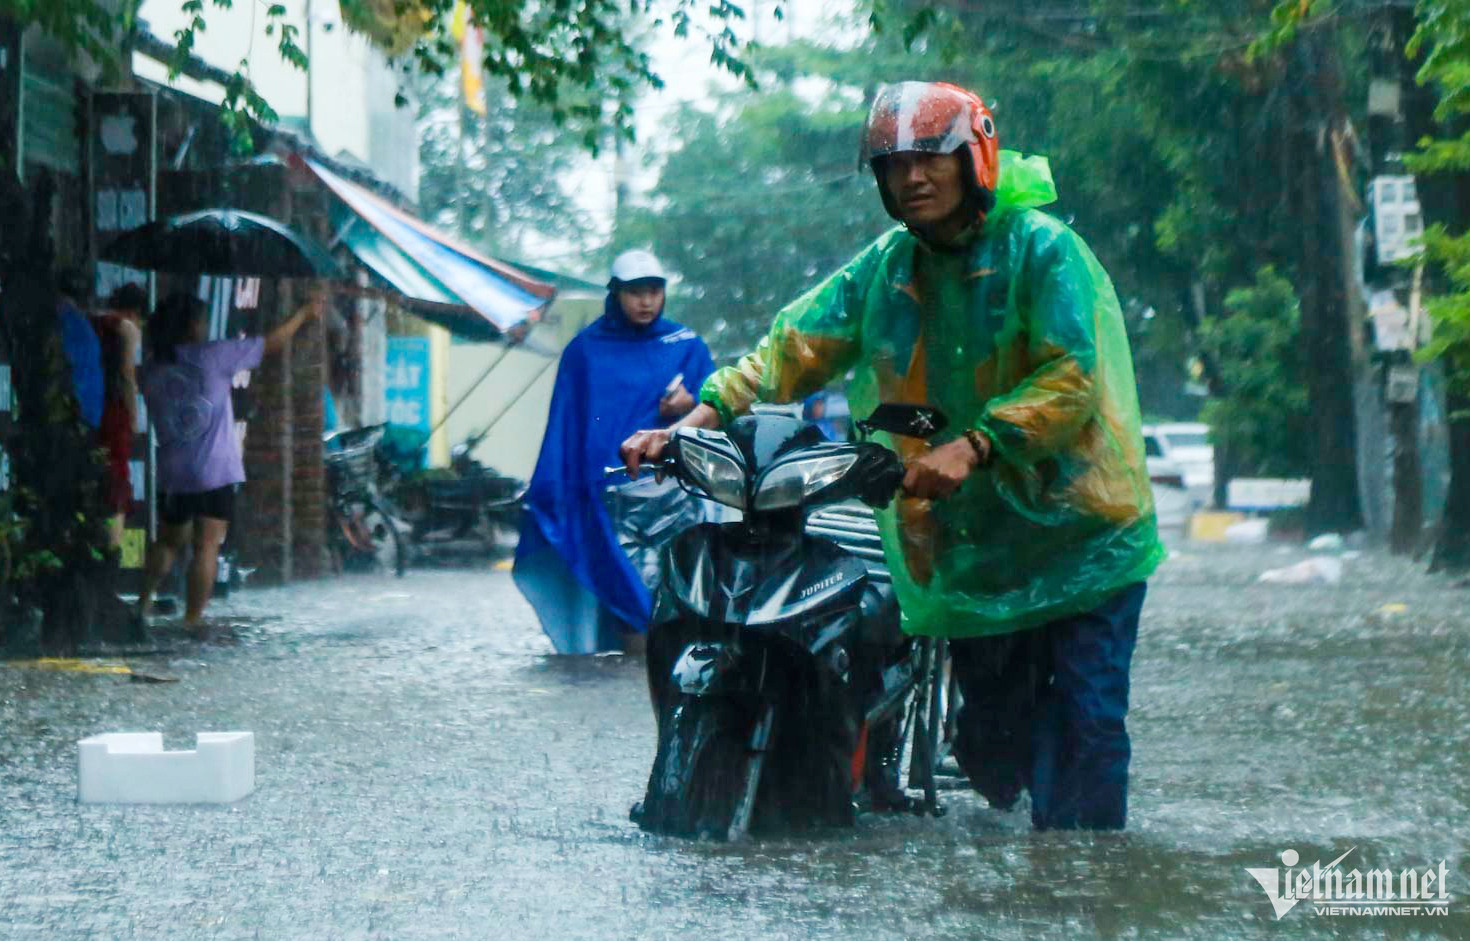 Hà Nội mưa lớn, người đi xe máy chới với giữa dòng nước ngập - Ảnh 16.